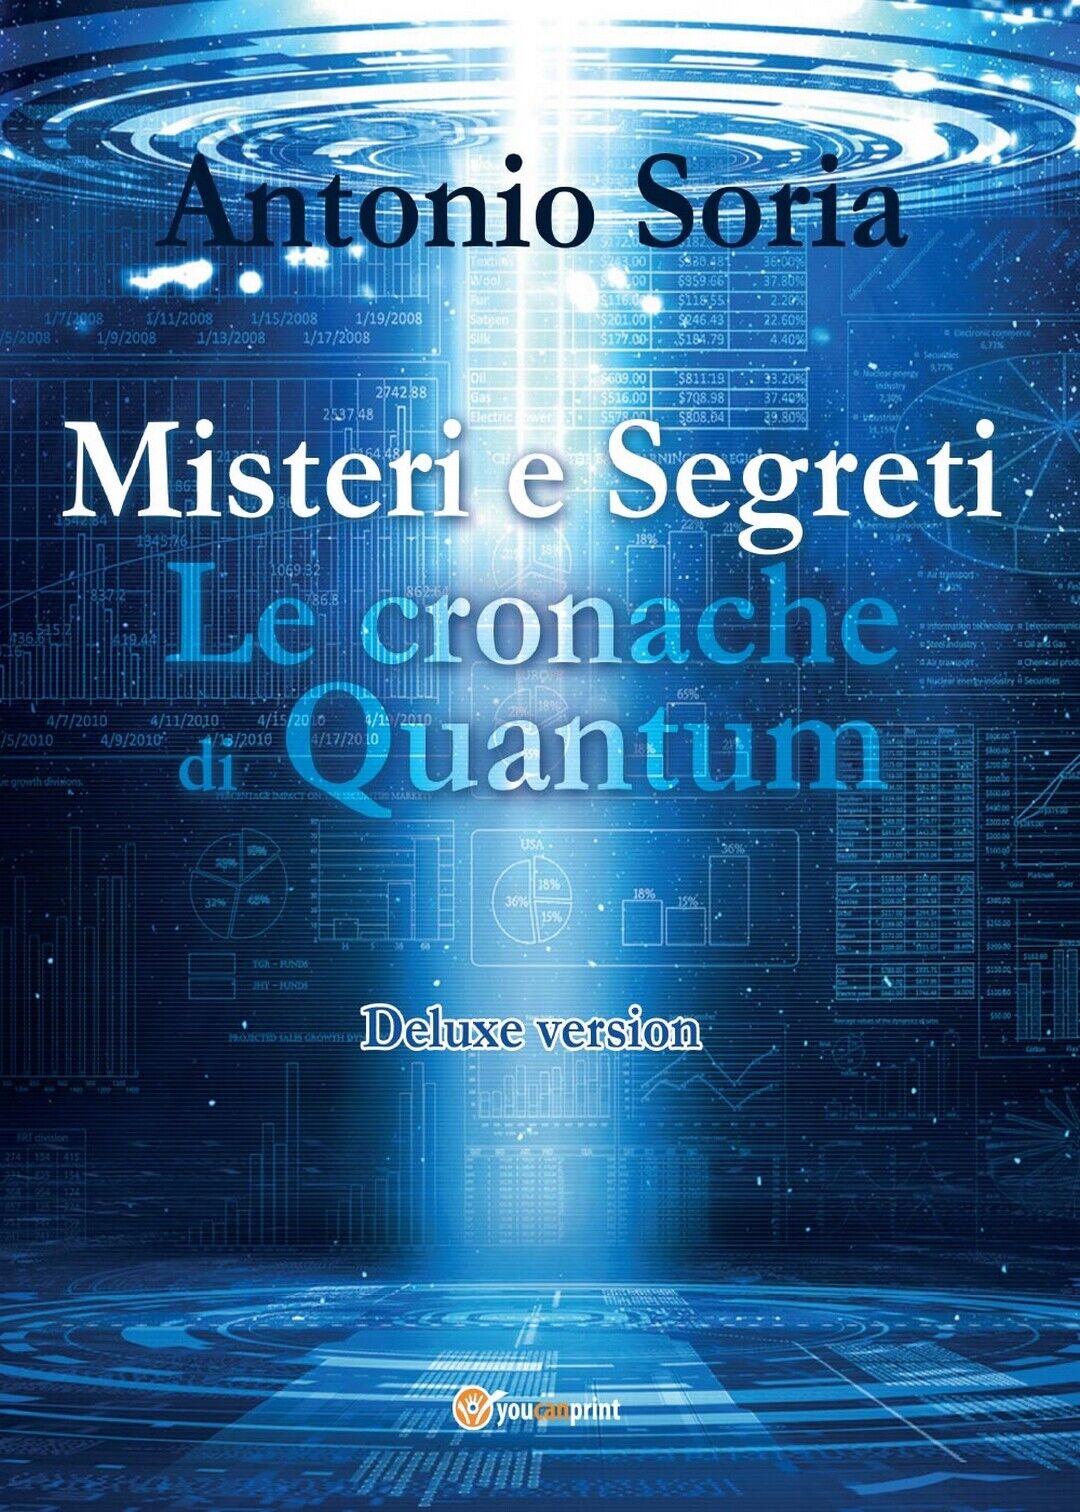 Misteri e Segreti. Le cronache di Quantum (Deluxe version)  di Antonio Soria libro usato